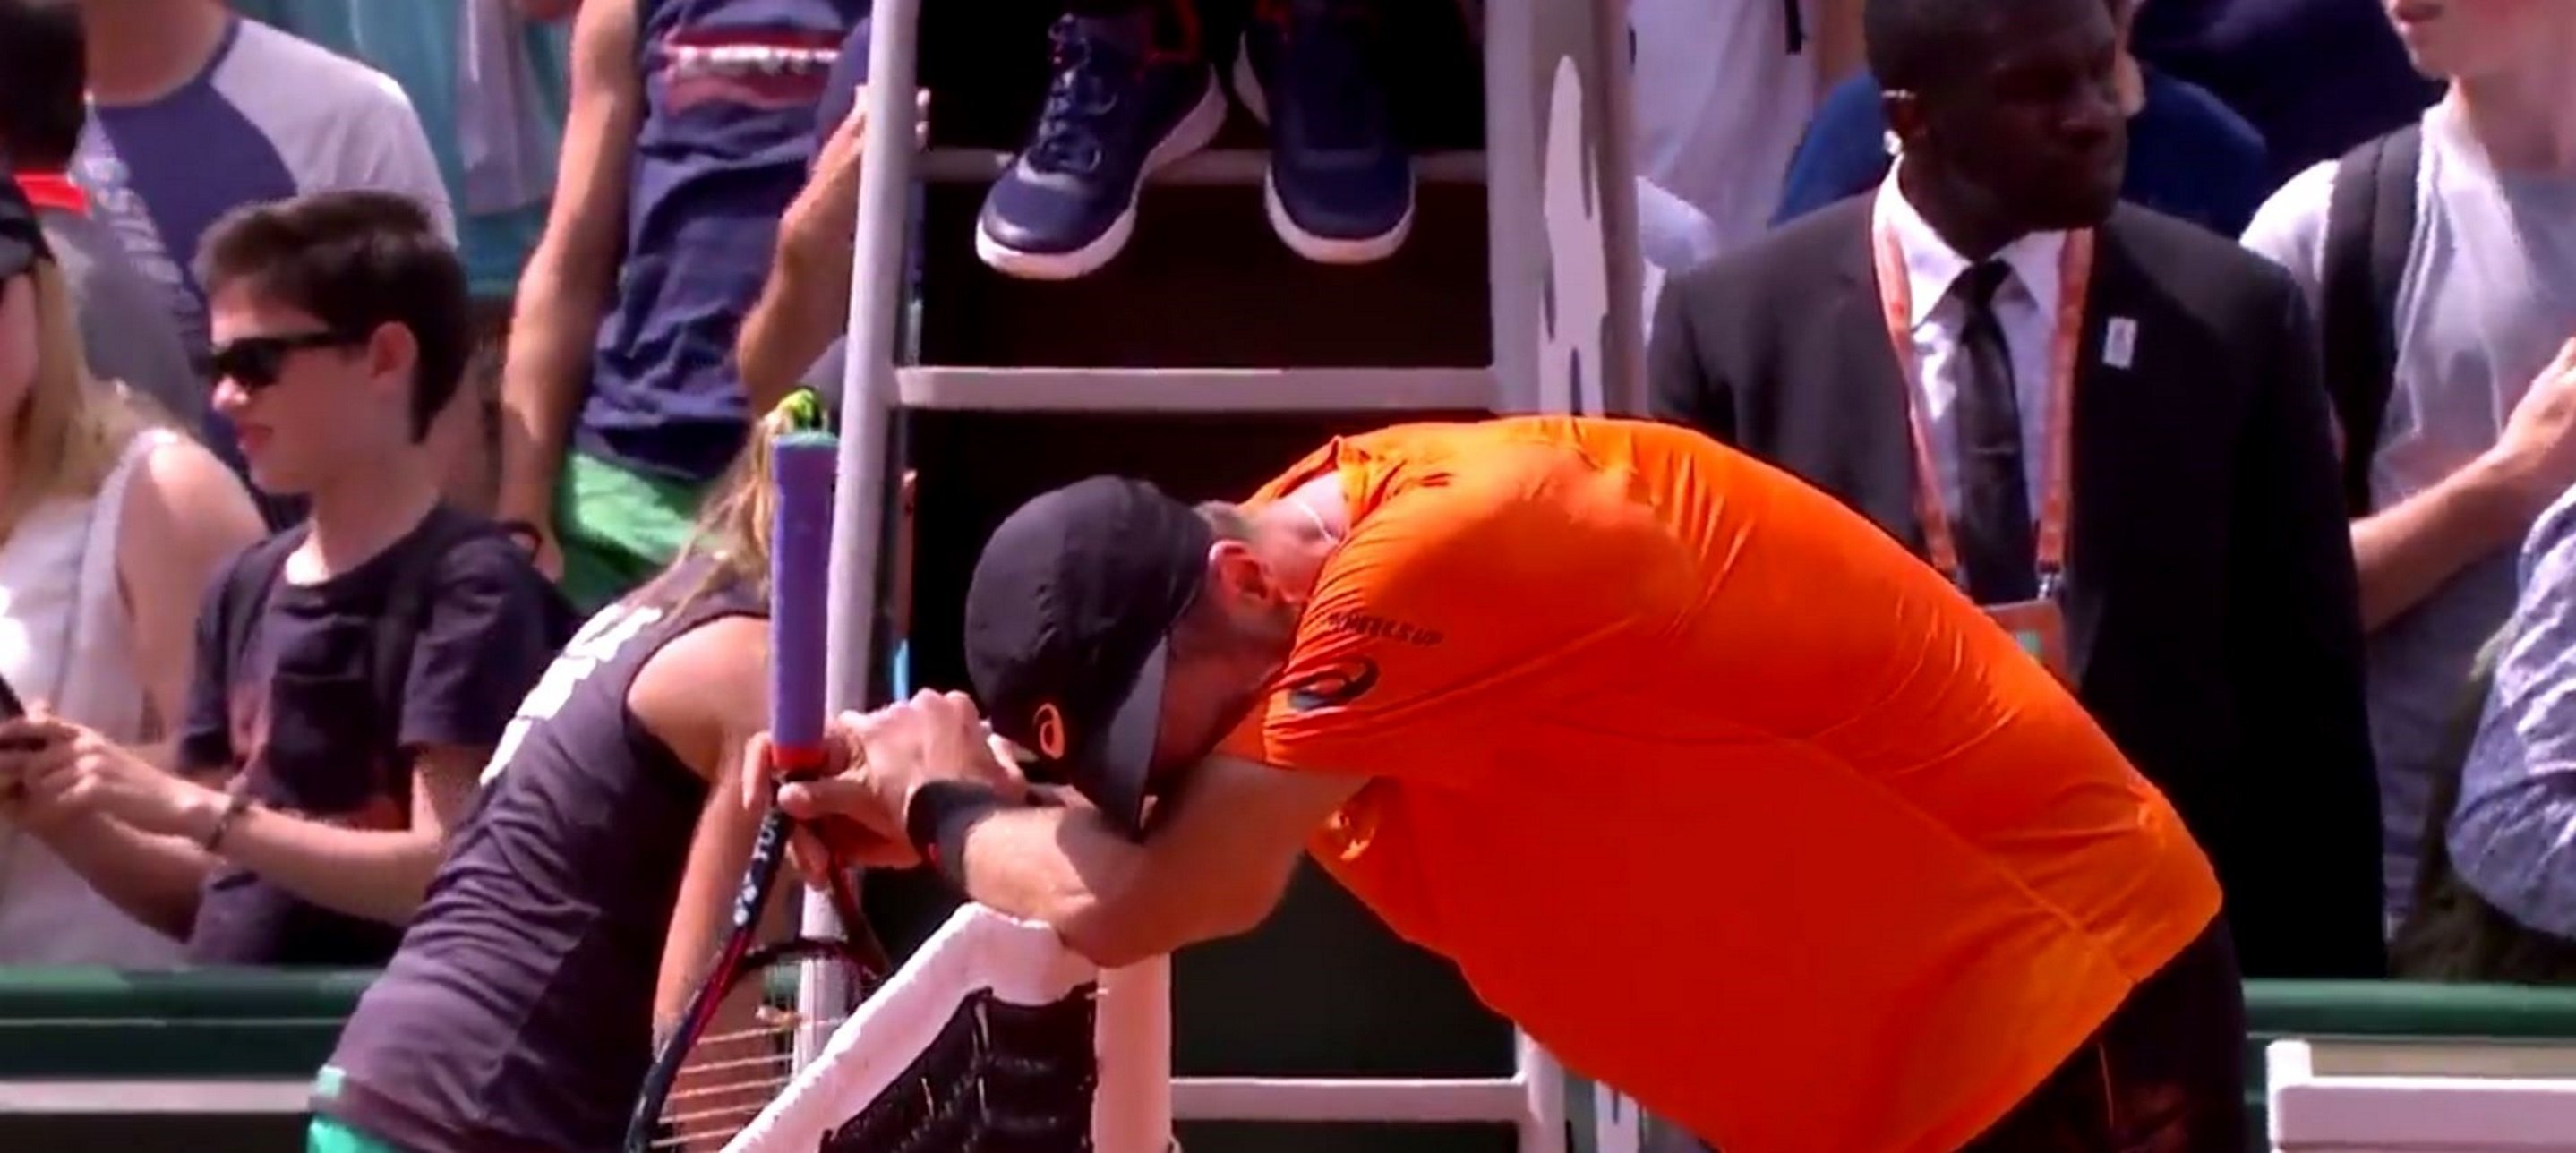 Lágrimas y una raqueta destrozada: el punto más dramático de Roland Garros